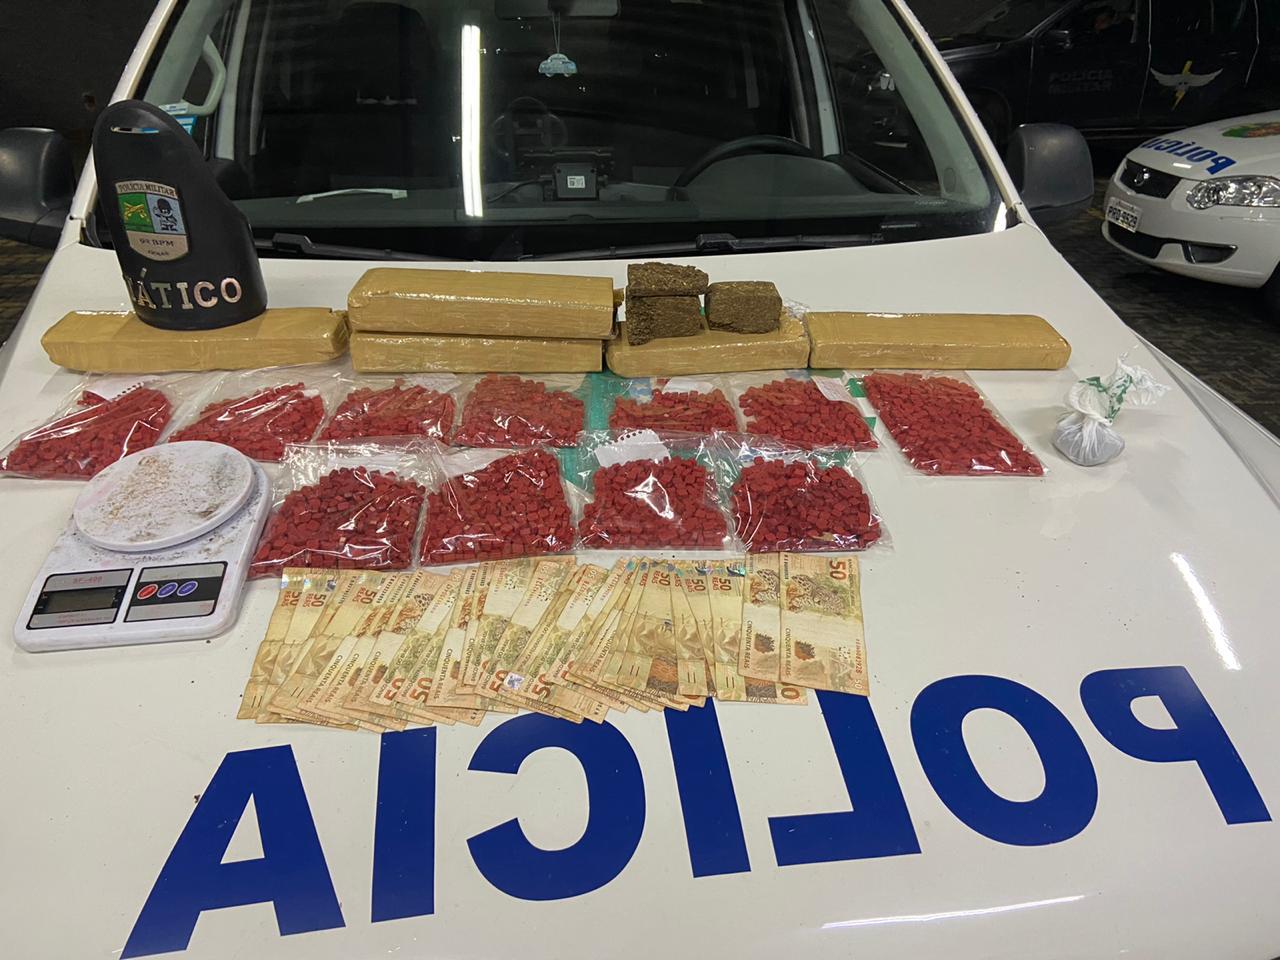 Um suspeito de tráfico foi preso com cerca de 4,1 mil comprimidos de ecstasy escondidos em um fundo falso no azulejo de uma casa em Goiânia. (Foto: Divulgação/PM)